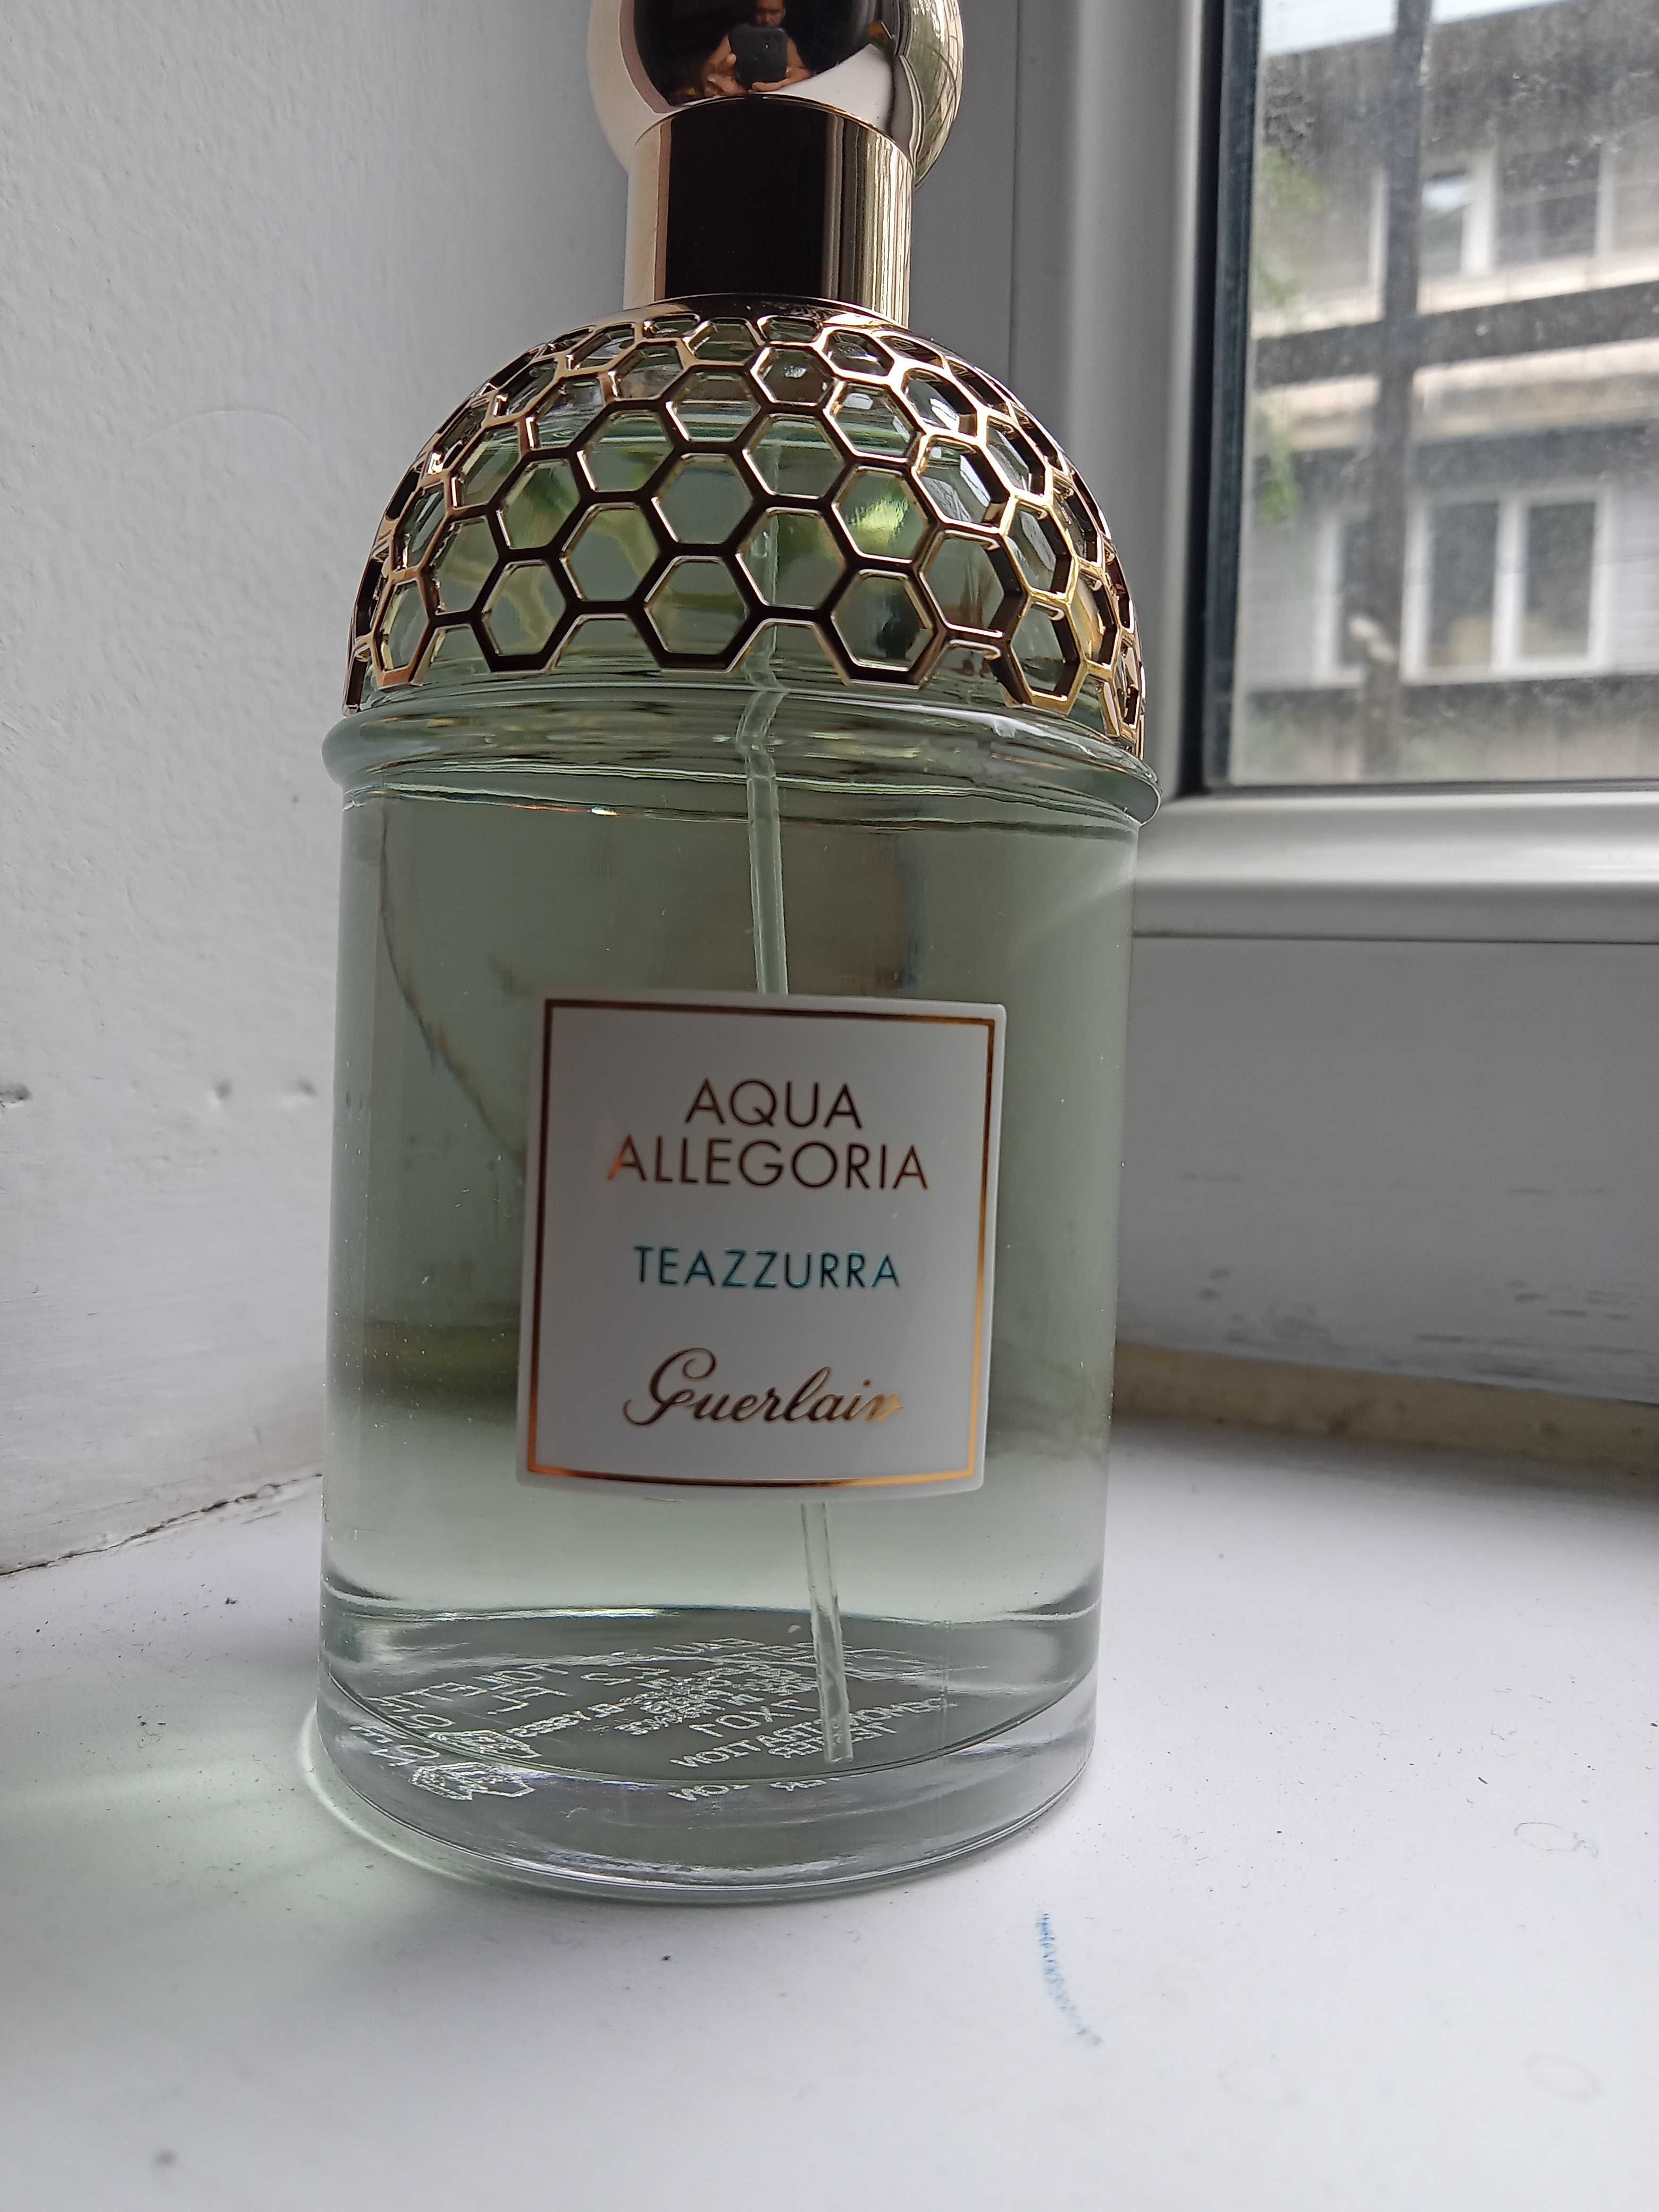 парфюм Aqua allegoria teazzurra Guerlain